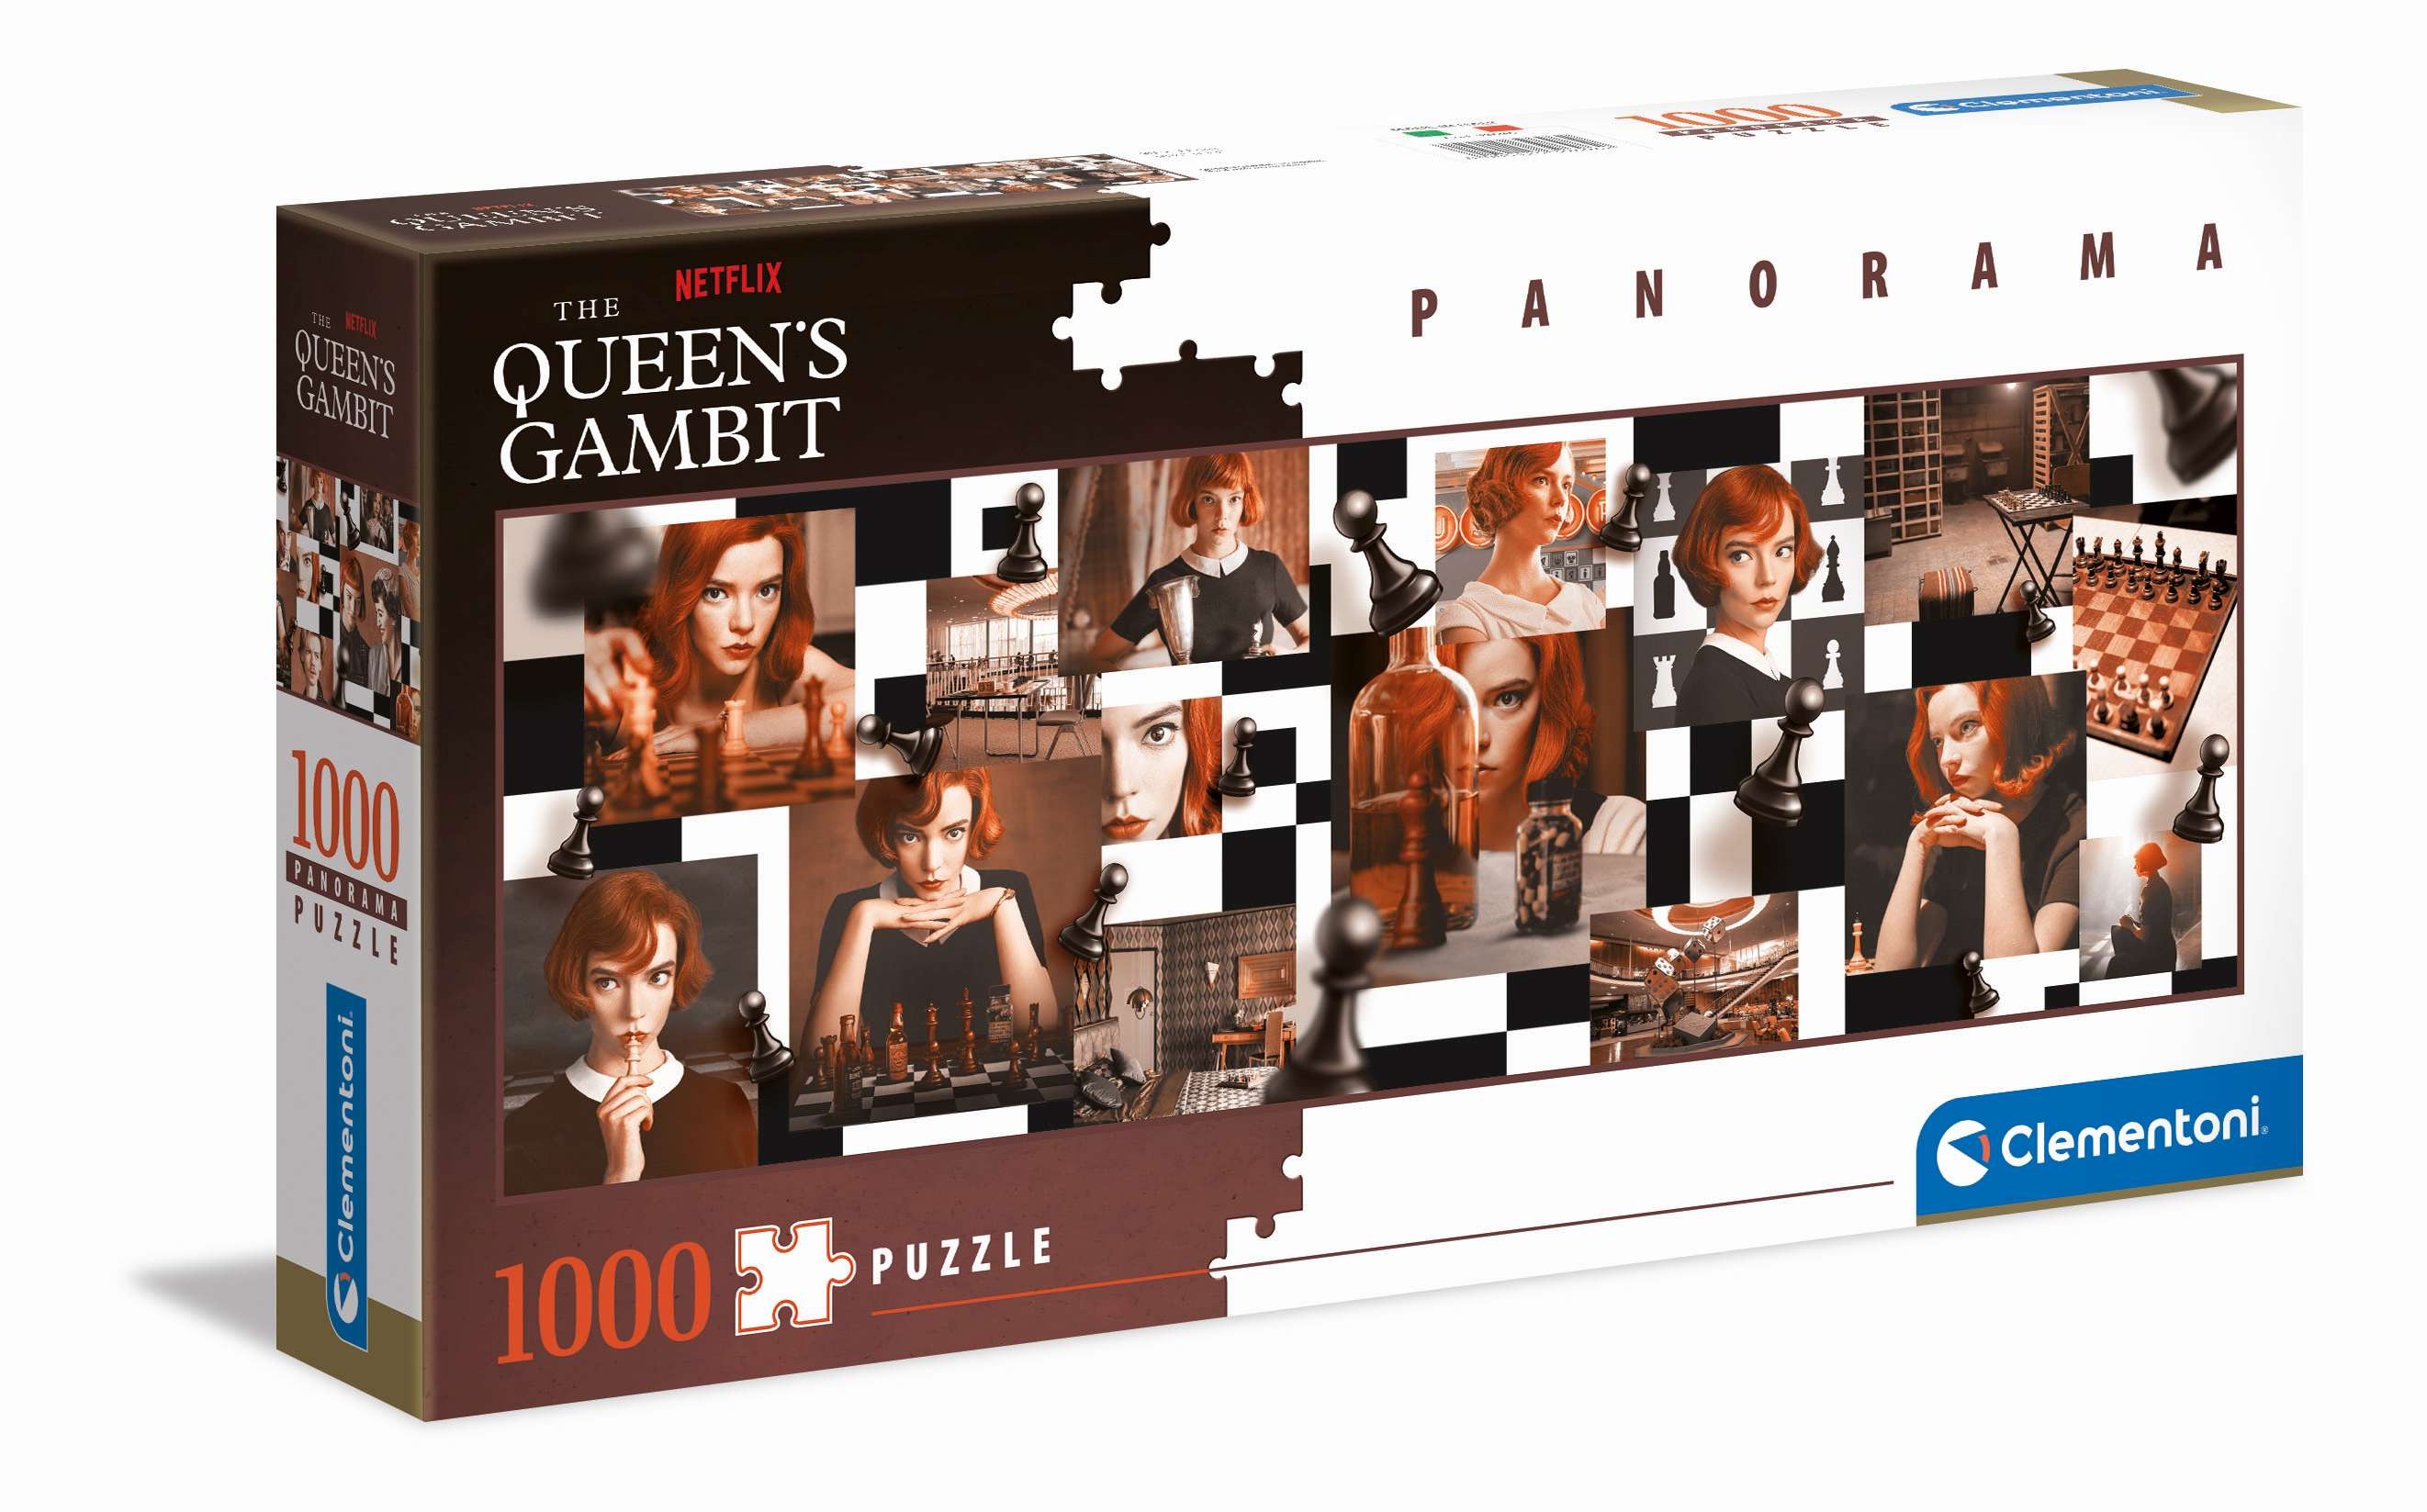 Clementoni, Puzzle 1000 el. - Panorama, Netflix Queen’s Gambit (39696)